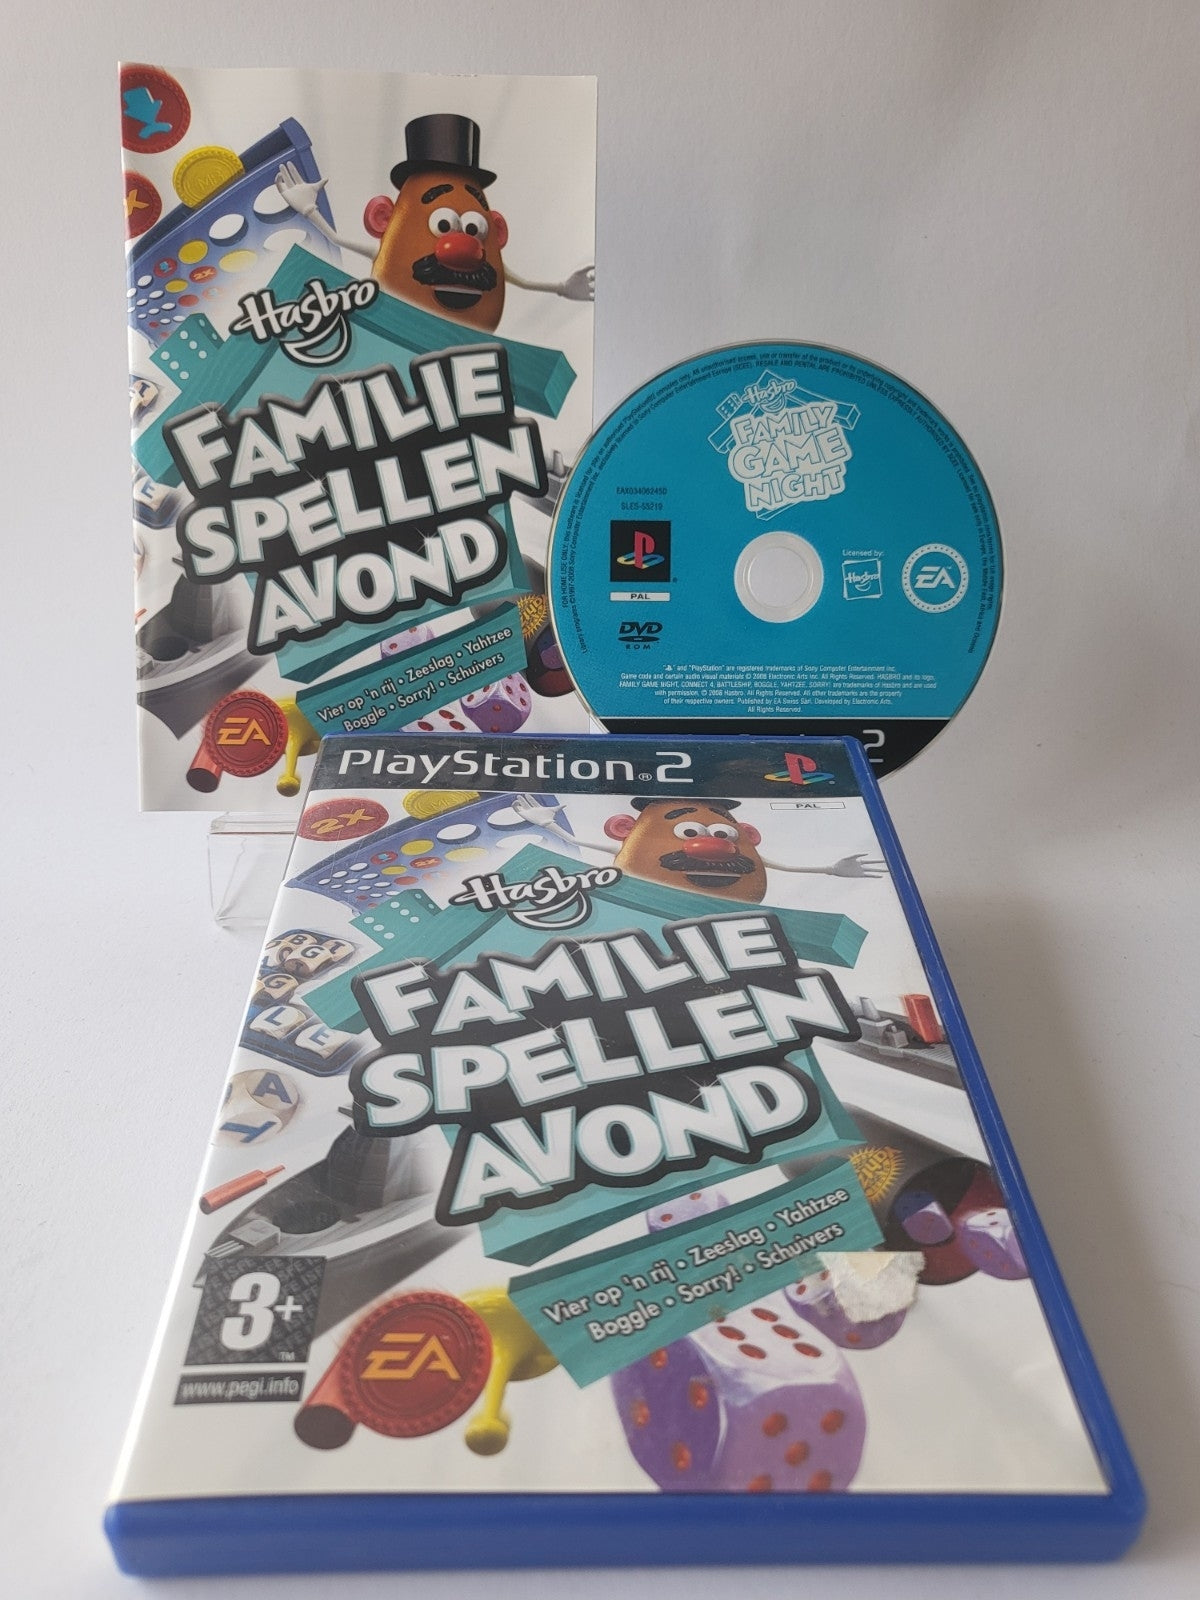 Hasbro Familie Spellen Avond Playstation 2